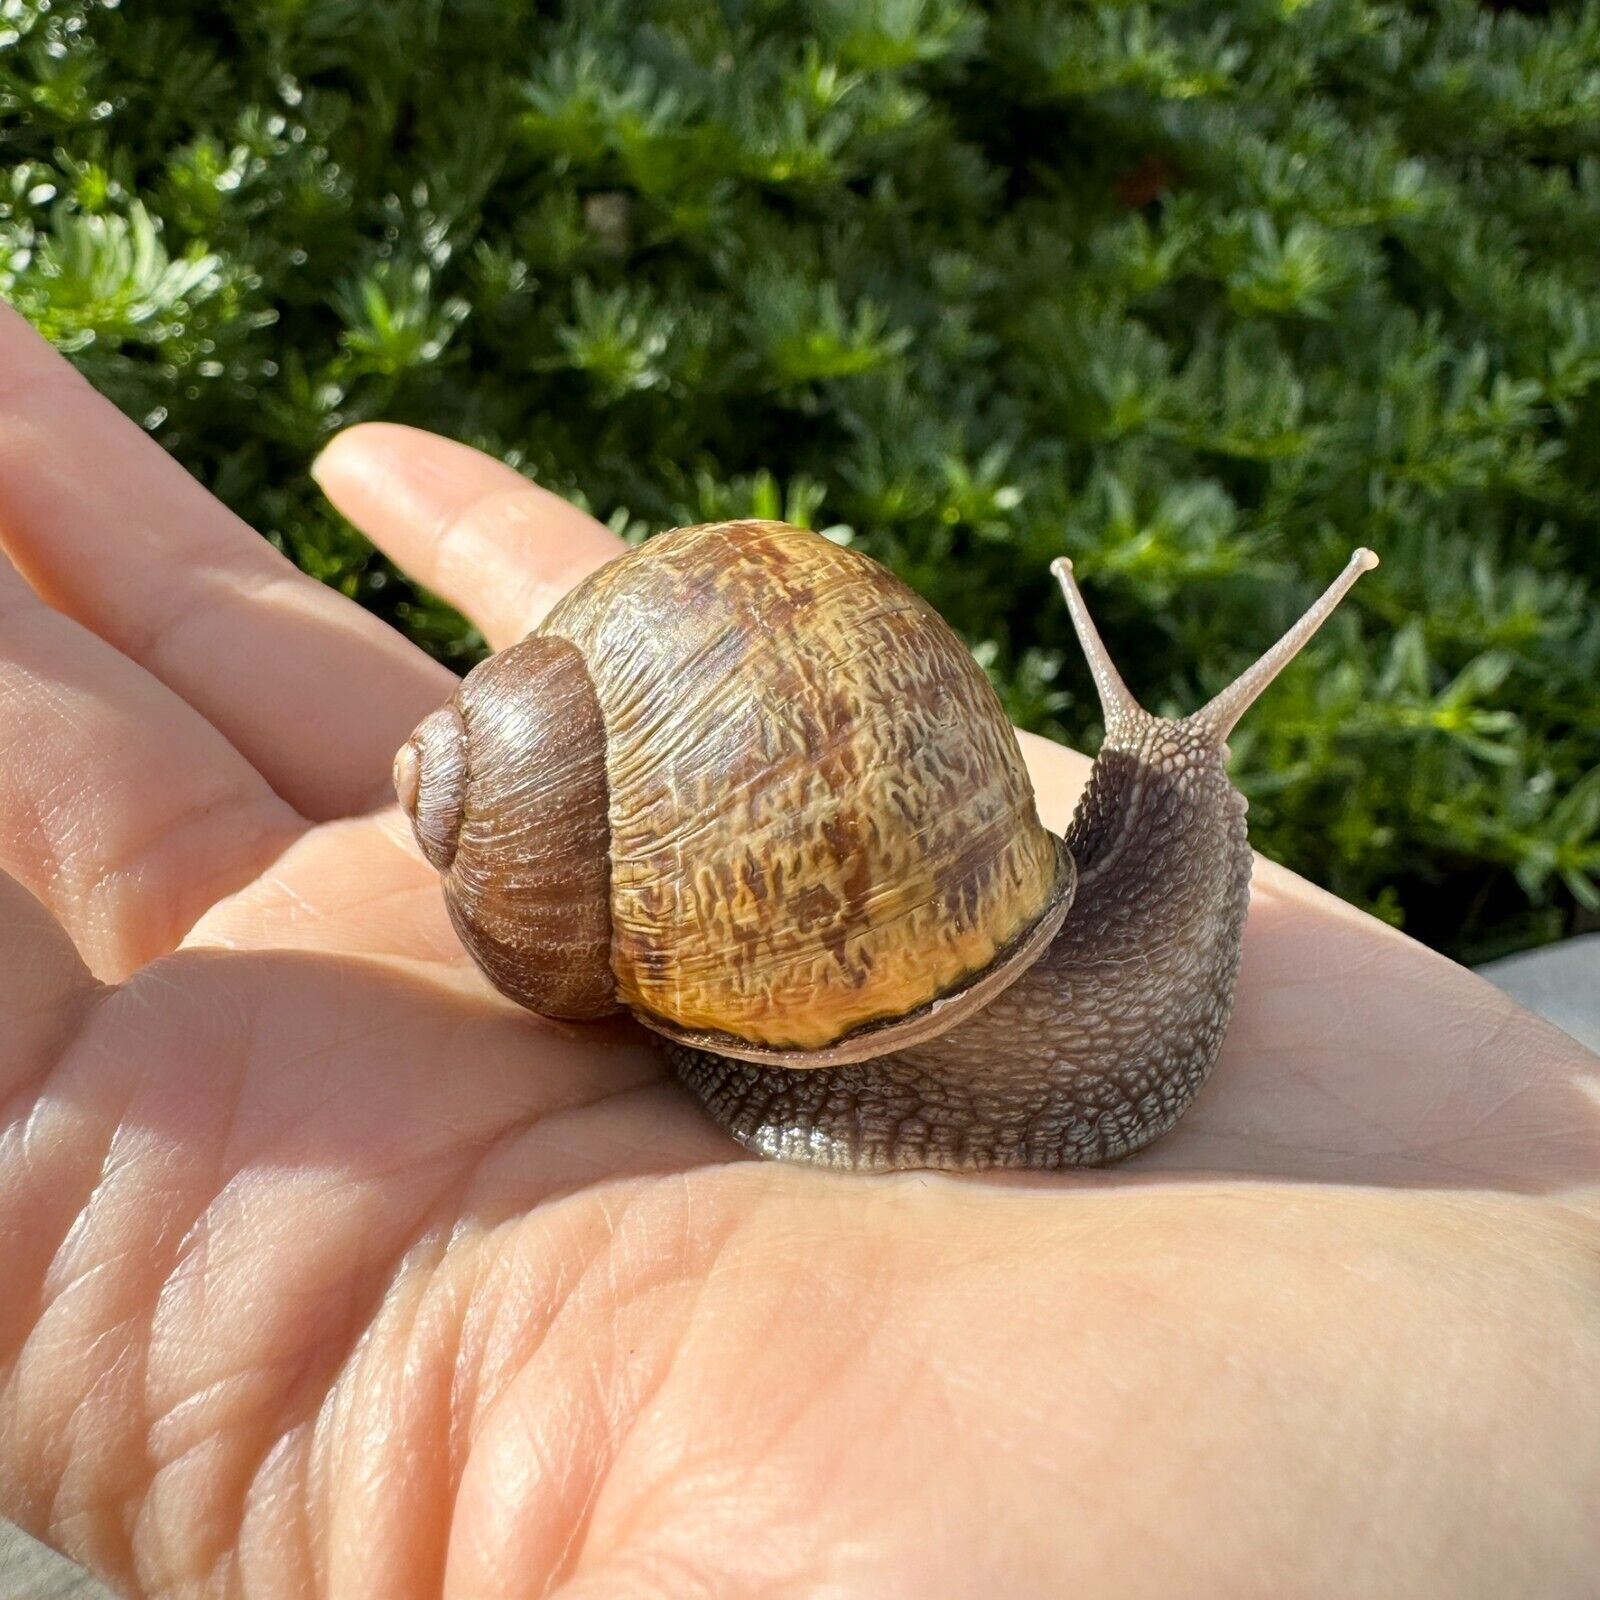 Super Large Live Land Garden Snail Pet Gros Gris Helix Aspersa Cornu aspersum